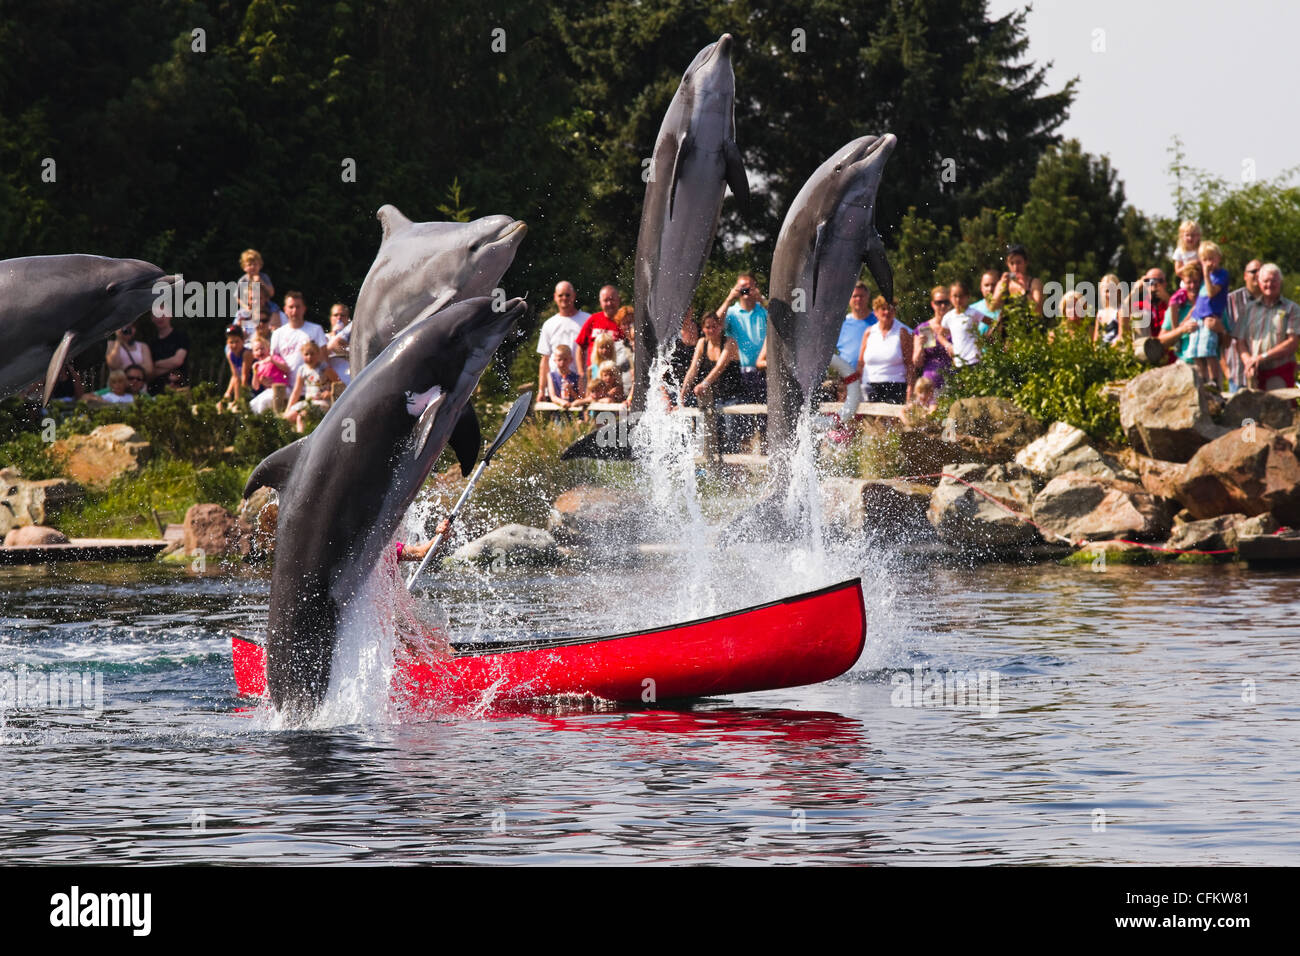 Weiblichen Delphin Keeper im Ruderboot Spaß mit großen Tümmlern hoch aus dem Wasser springen. Stockfoto